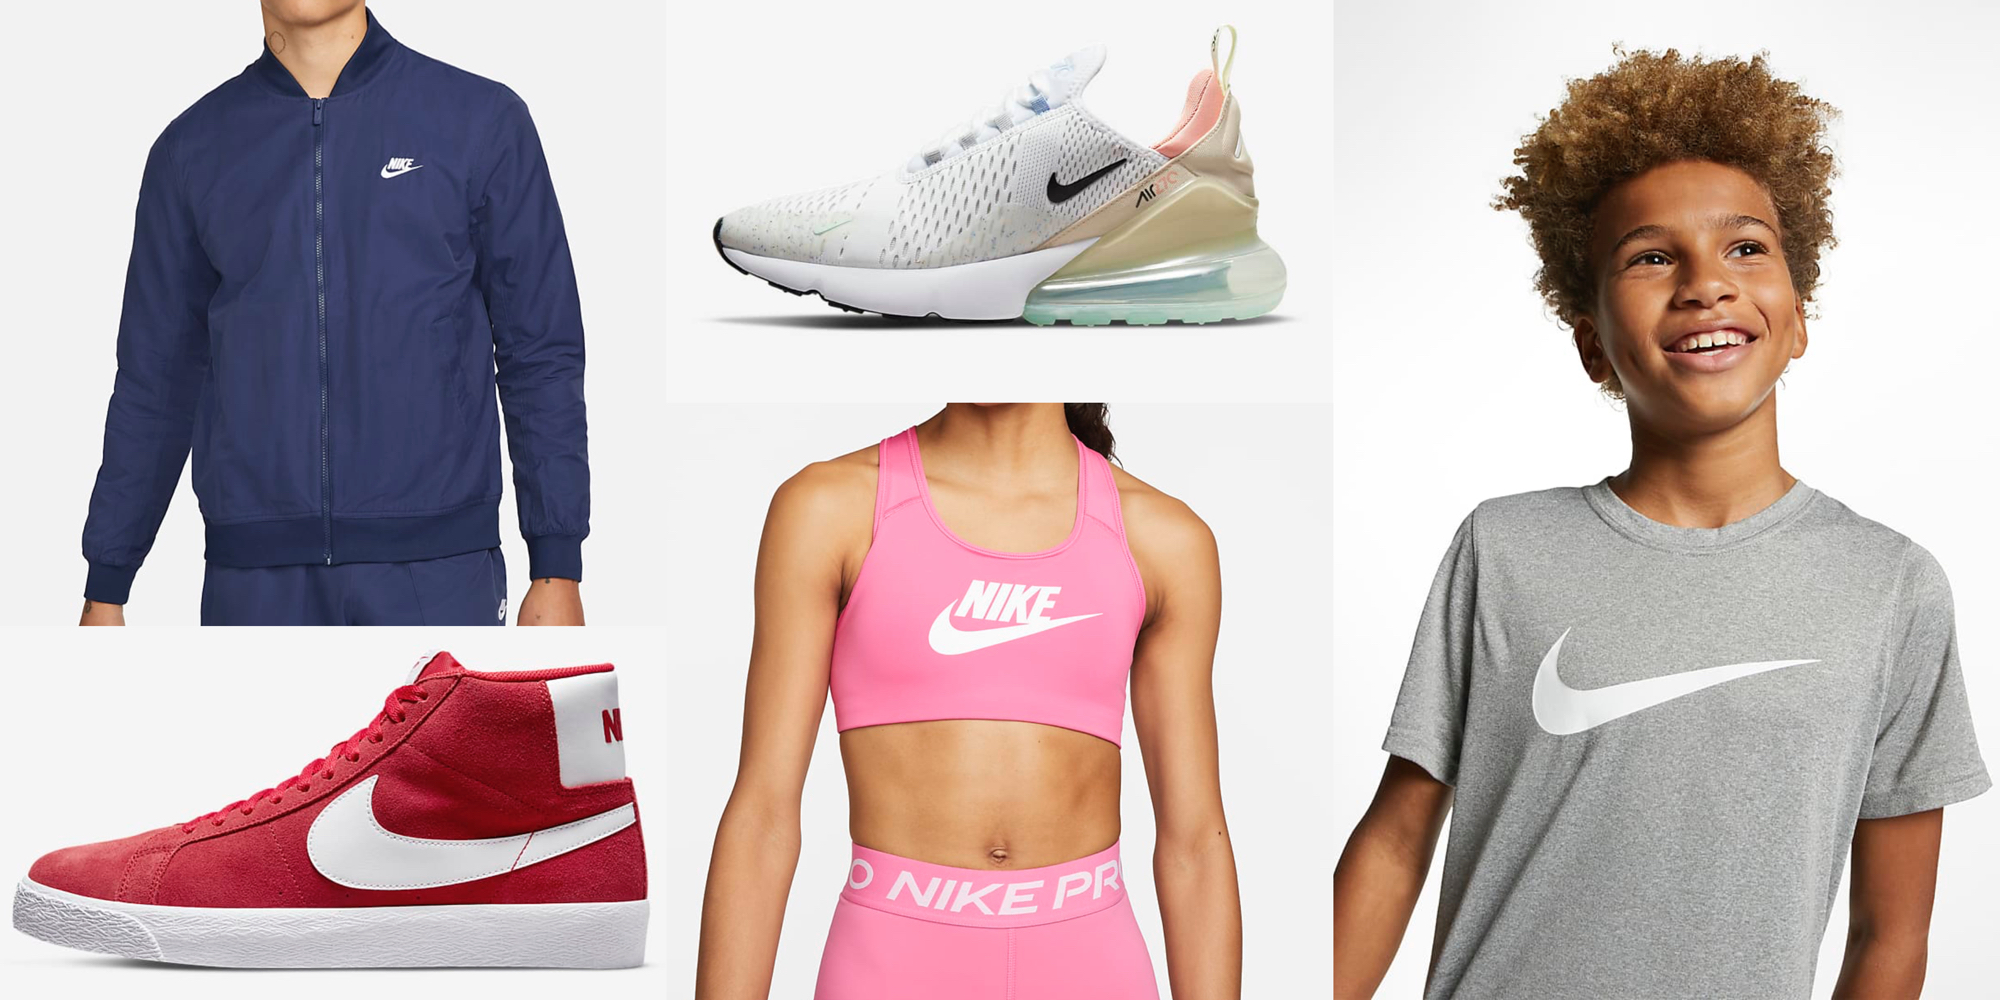 Nike to school deals and promo codes - al.com